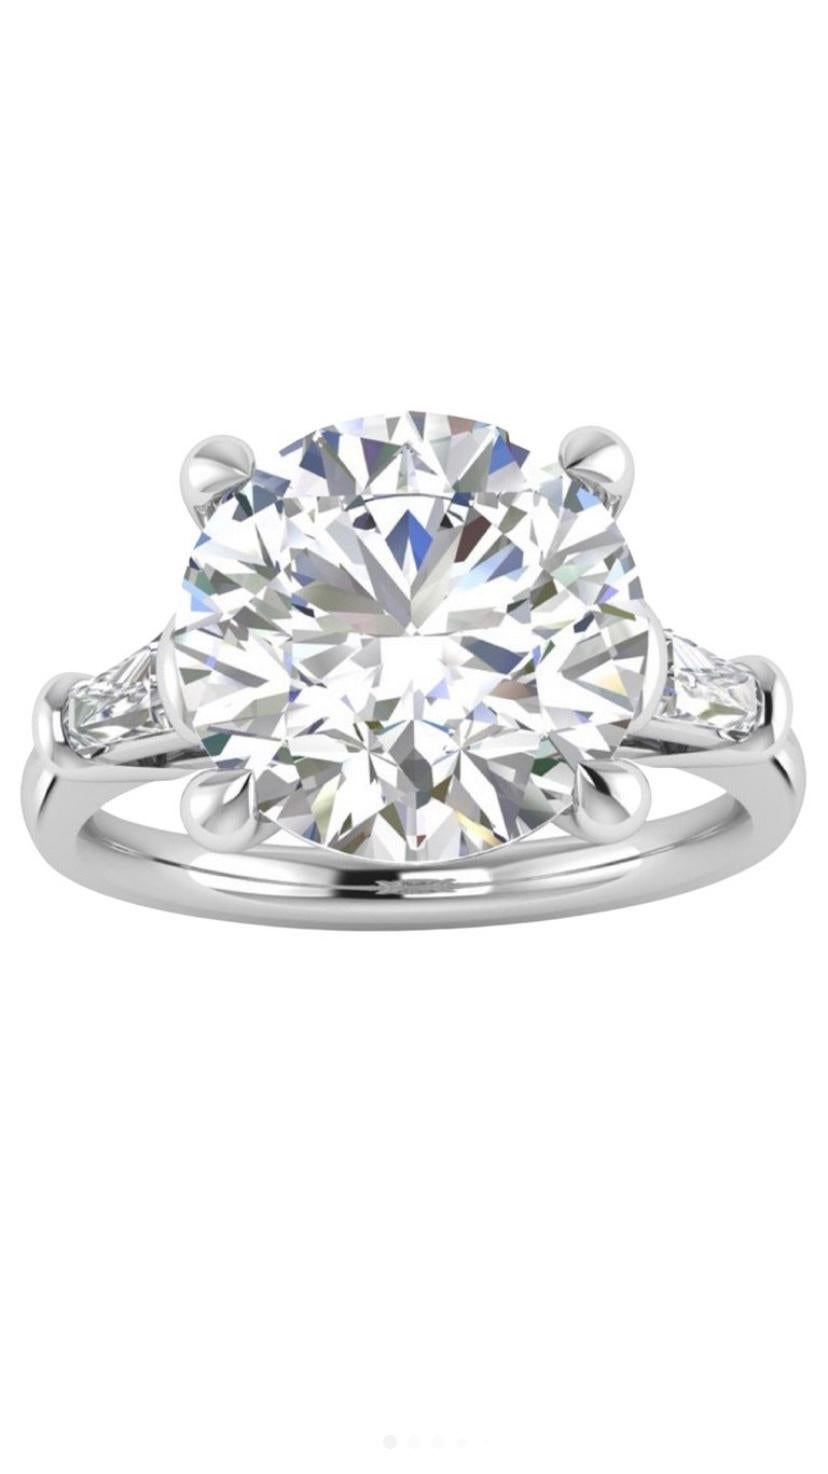 IGI-zertifizierter 5 Karat Diamant auf Solitärring für Damen oder Herren im Angebot